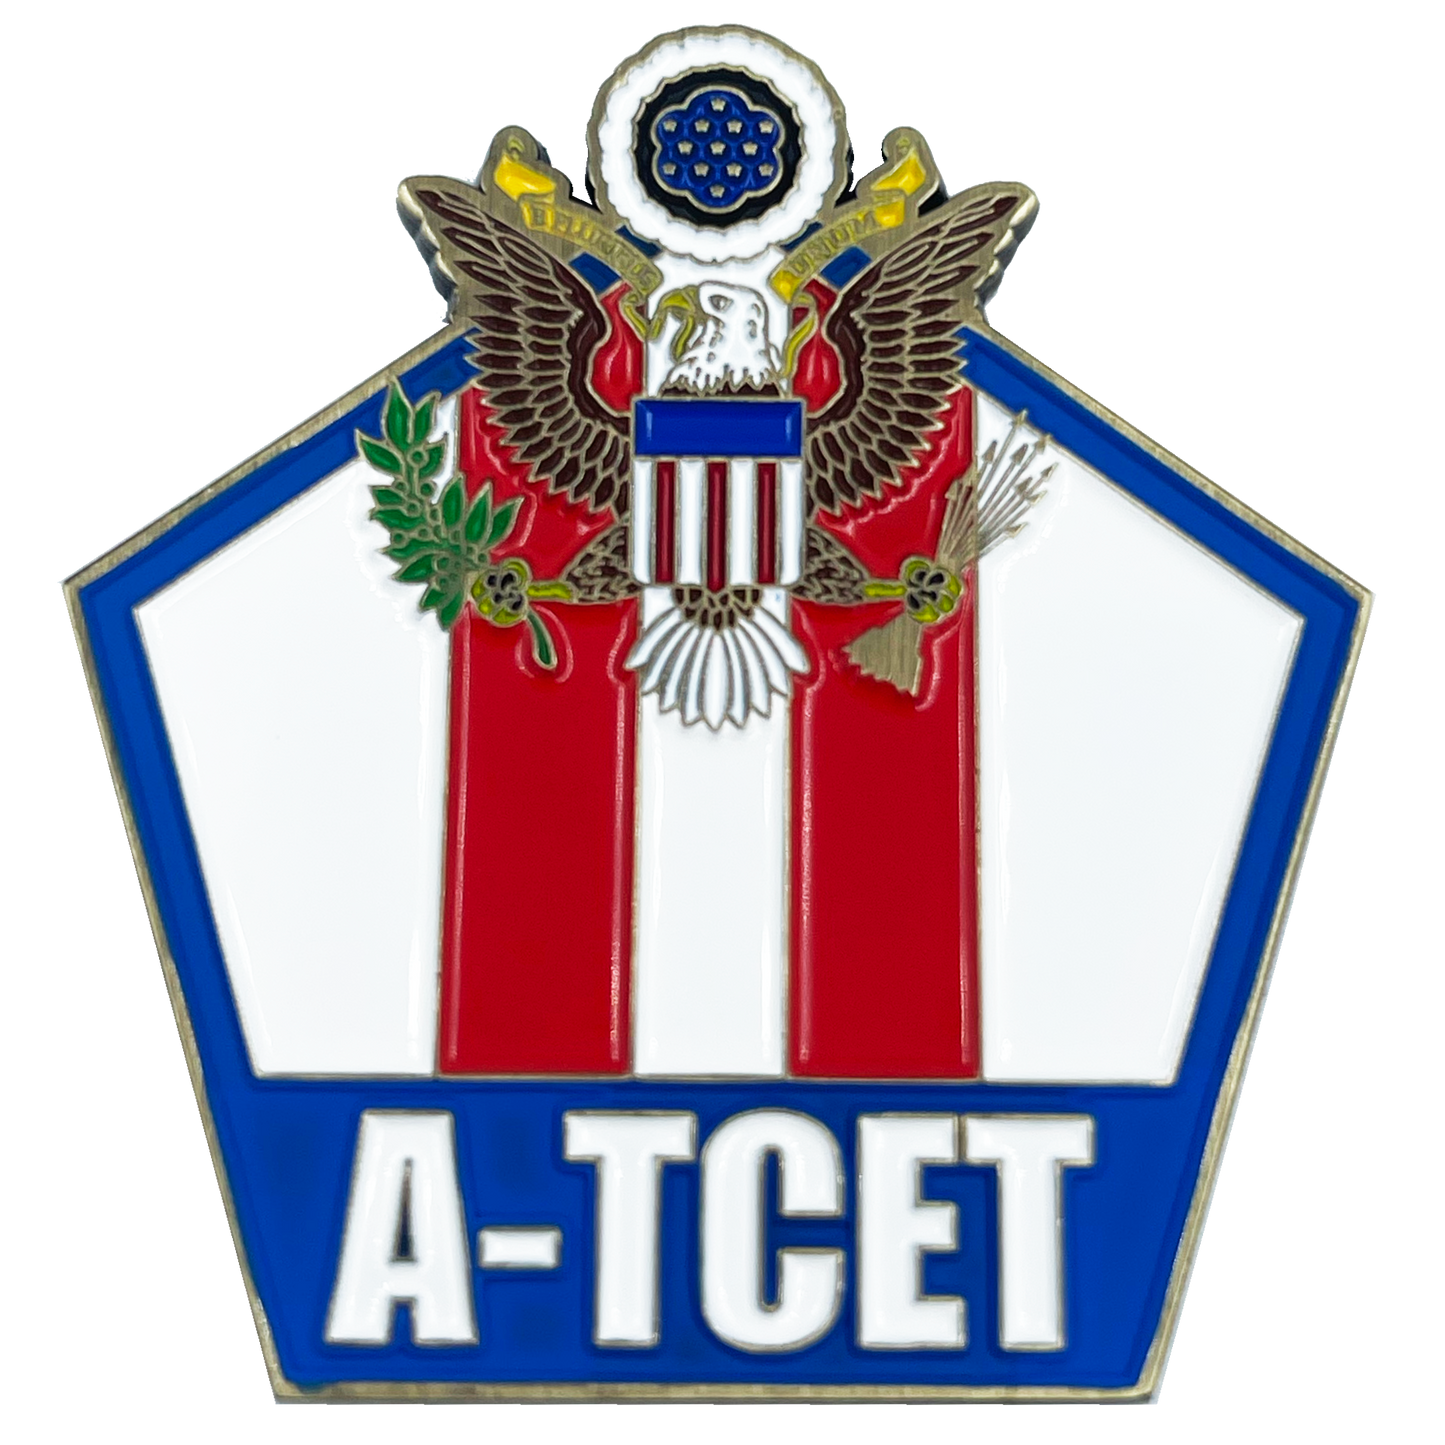 BL15-018 CBP Officer A-TCET Anti Terrorism Contraband Enforcement Team Airport Seaport